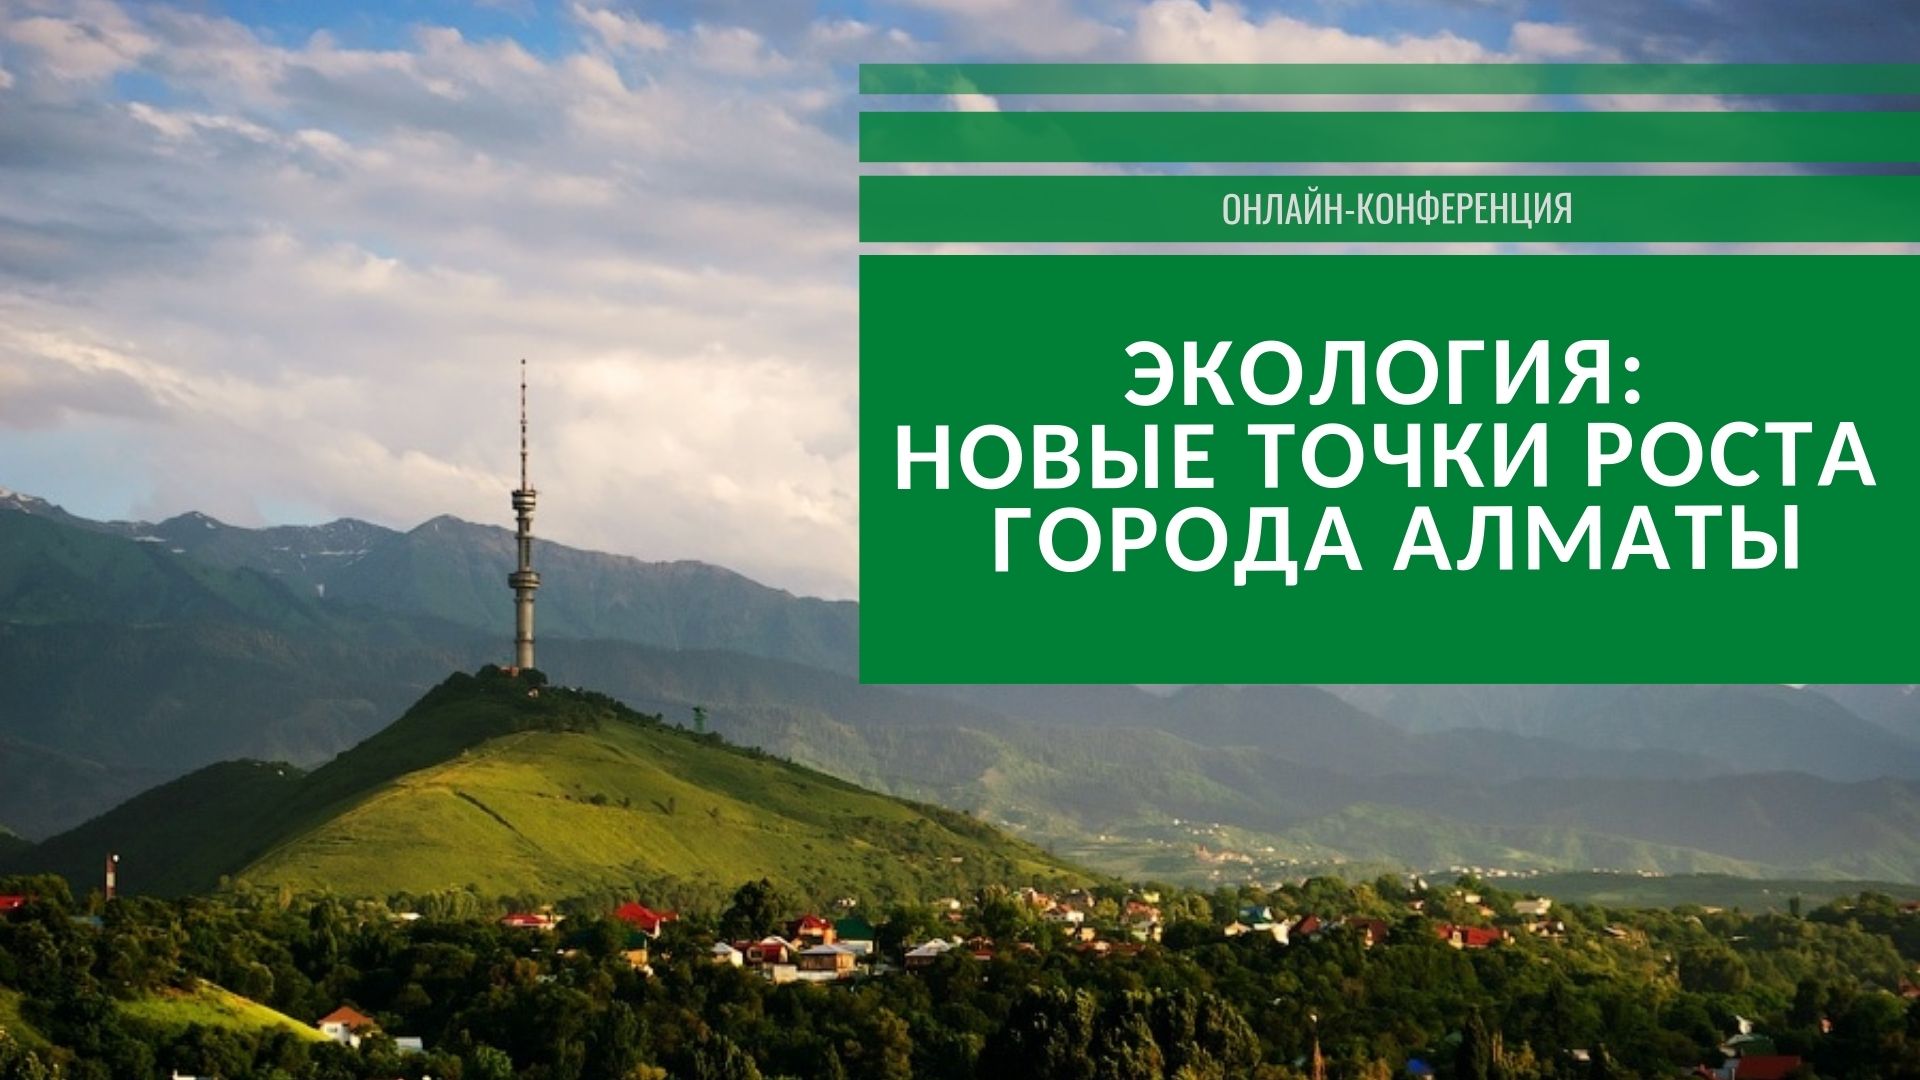 В южной столице пройдет онлайн-конференция «Новые точки роста города Алматы»